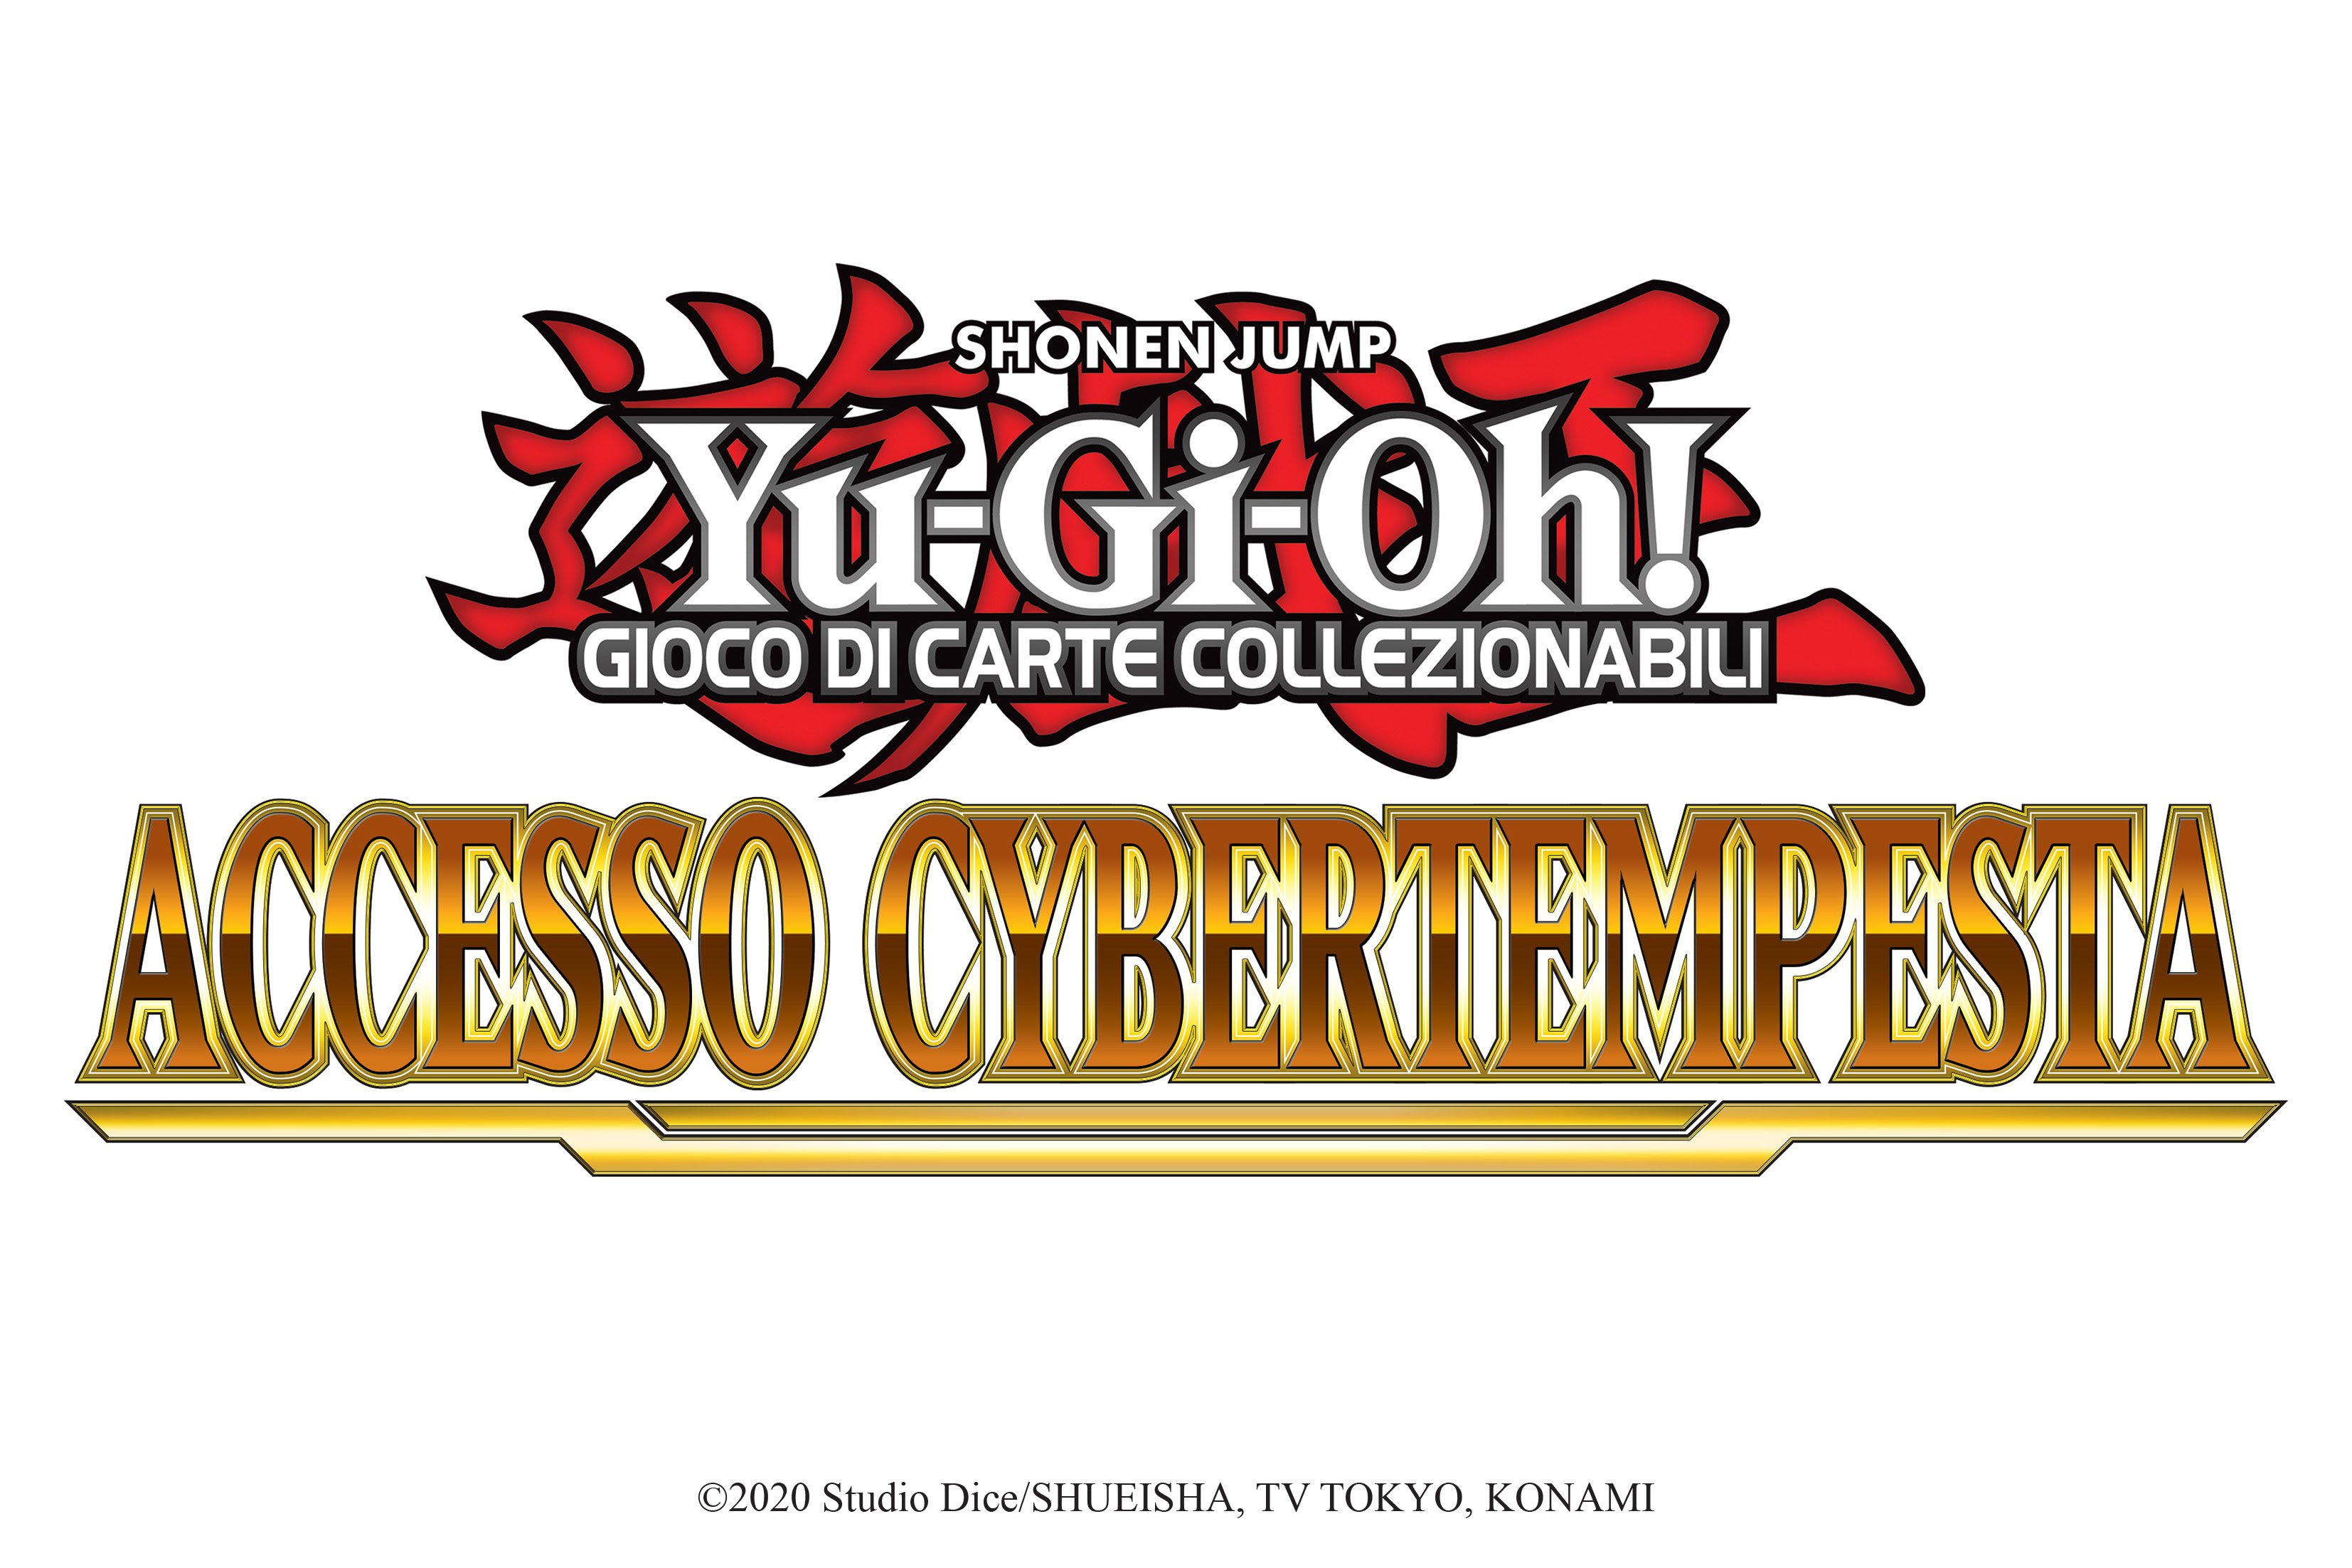 Yu-Gi-Oh! GIOCO DI CARTE potere cyberse con Accesso Cybertempesta disponibile